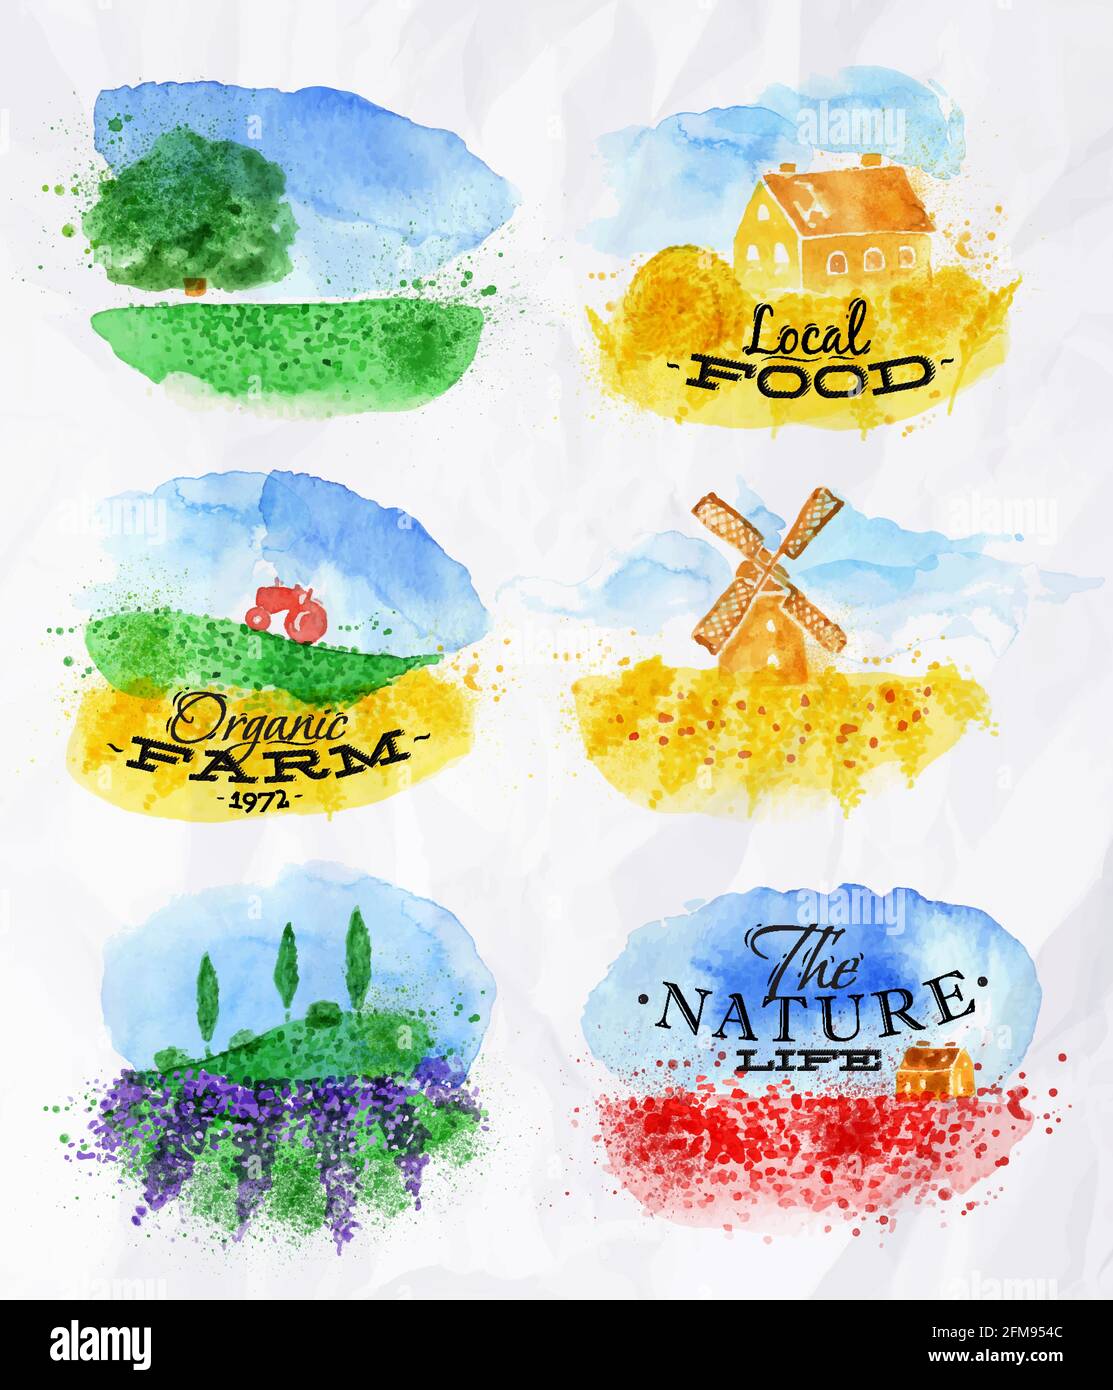 Les paysages d'aquarelle symbolisent les champs de blé de coquelicots, de lavande, d'herbes avec des maisons miniatures moulin et un tracteur avec la ferme biologique lettering, local foo Illustration de Vecteur